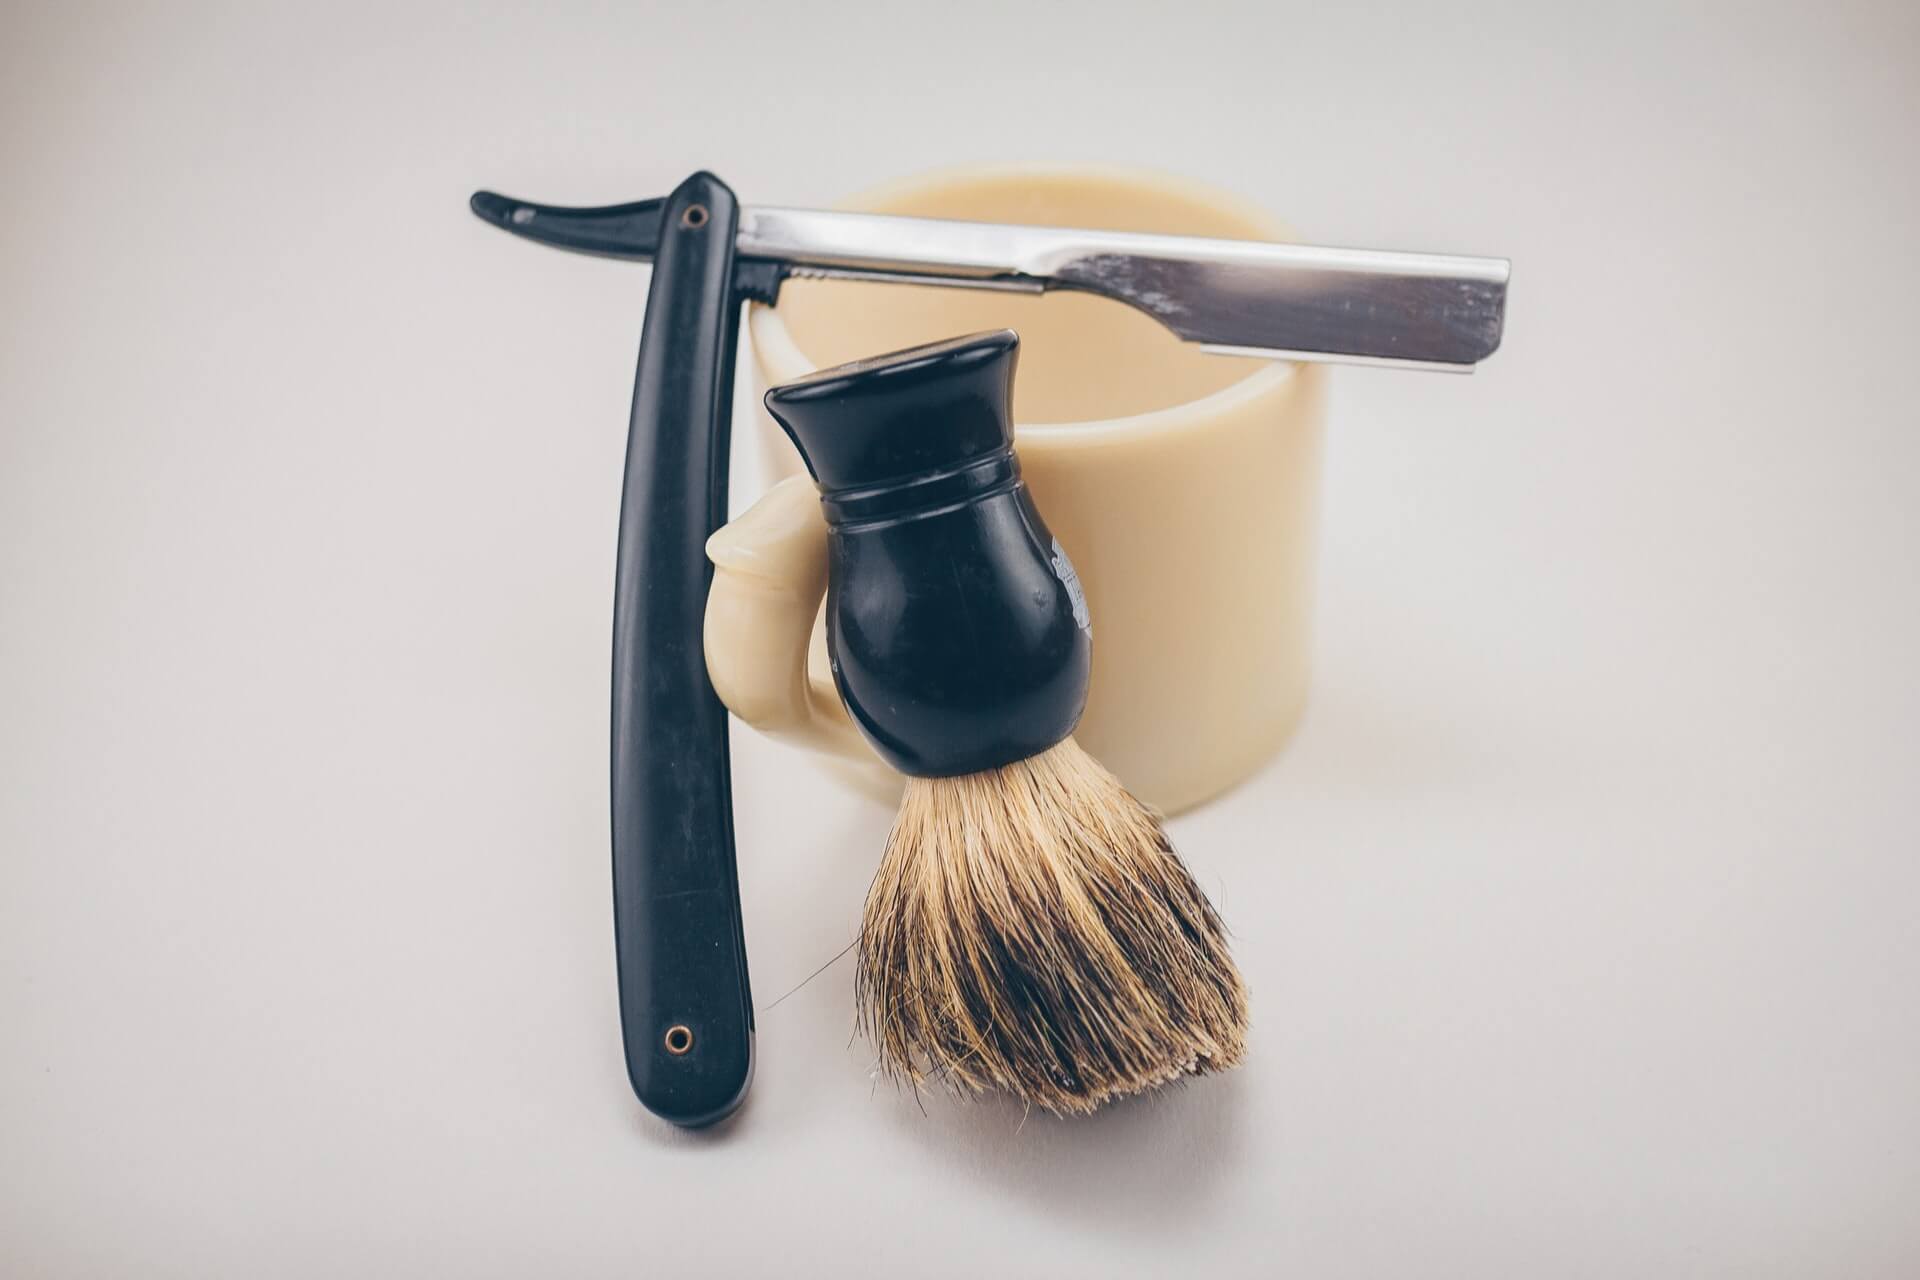 Bartpflege Männerpflege Bartpflege Produkte Geschenk Idee für den Mann